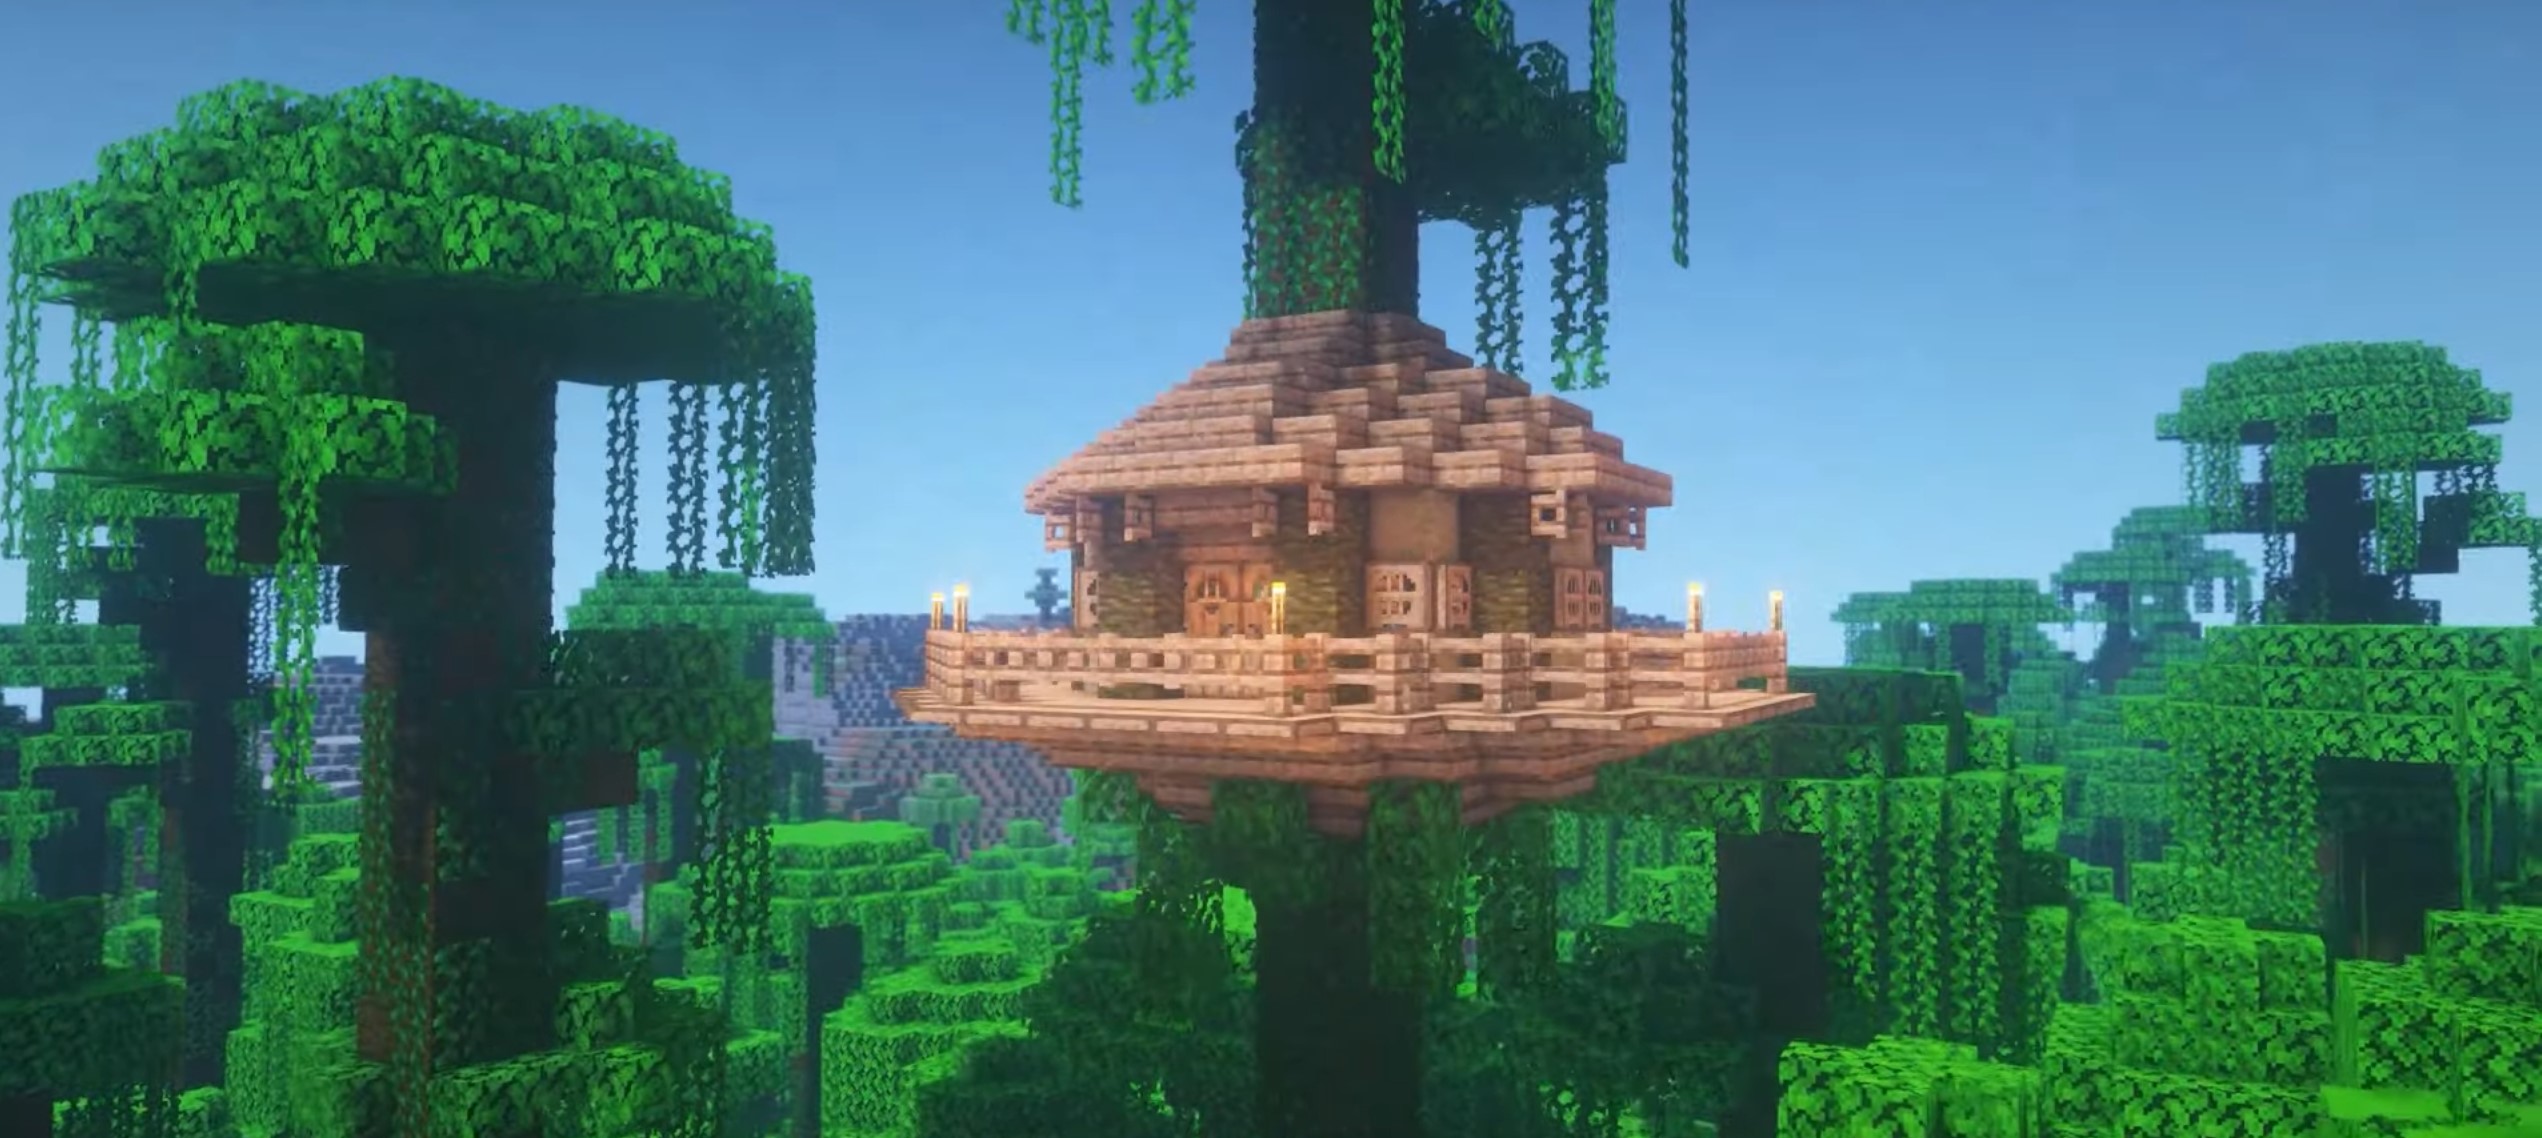 Survival Jungle Tree House minecraft building idea